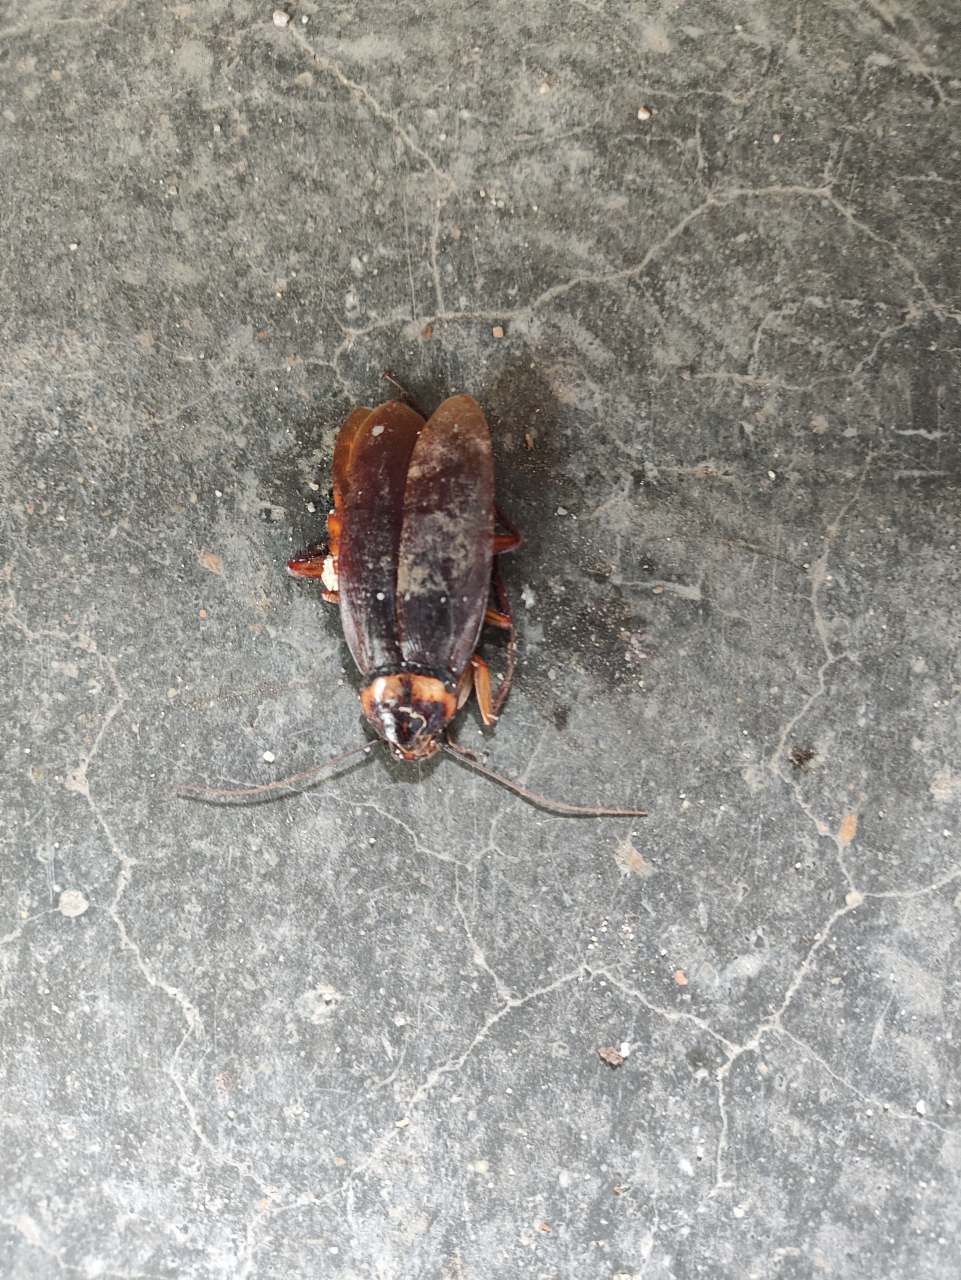 在家里面发现了一只小蟑螂, 但是这只小蟑螂已经在窗户外面了, 因为种